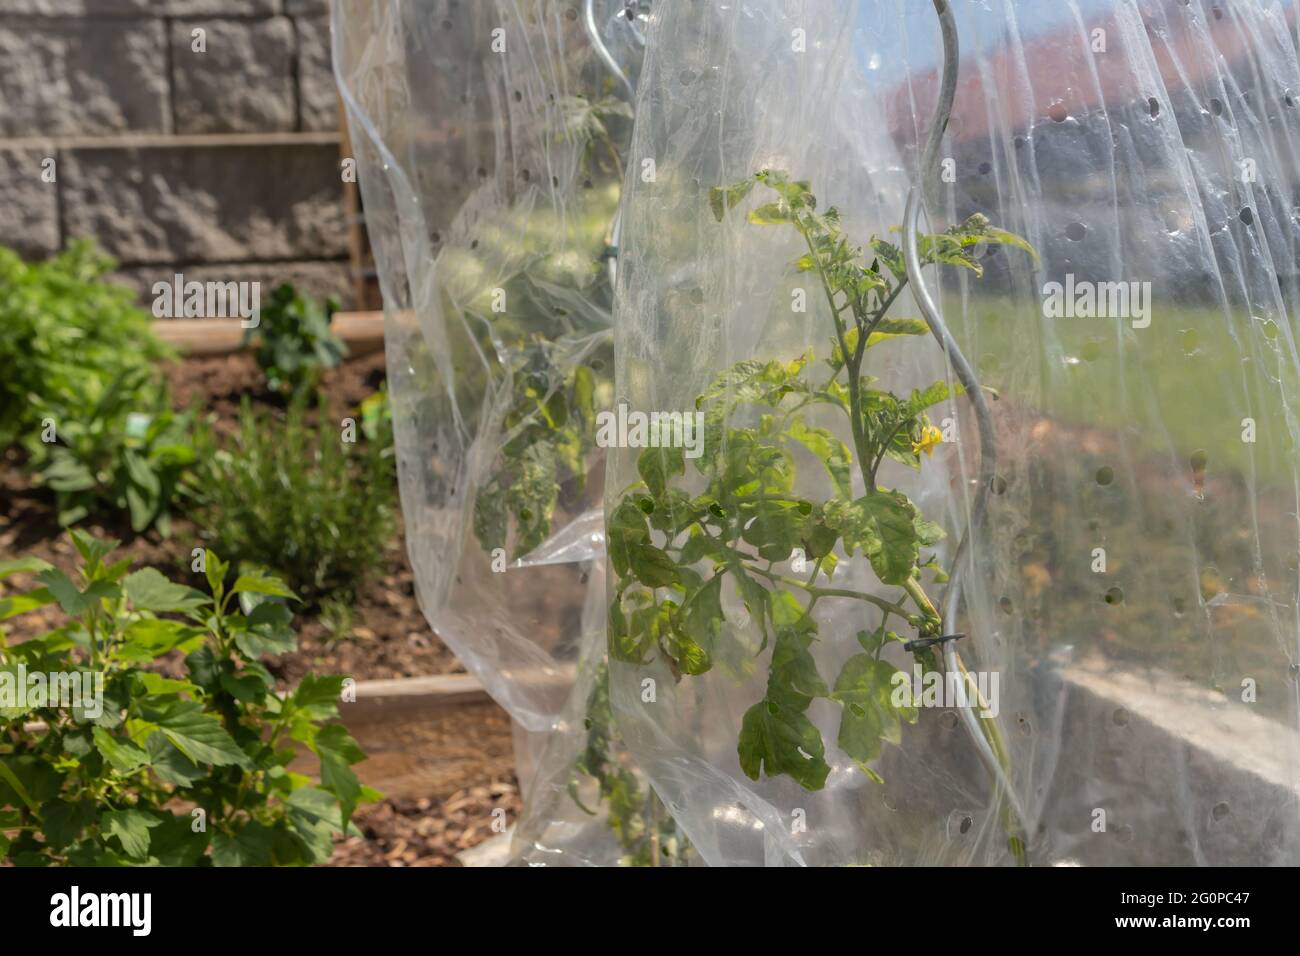 Pomodori protetti in un cerotto vegetale Foto Stock